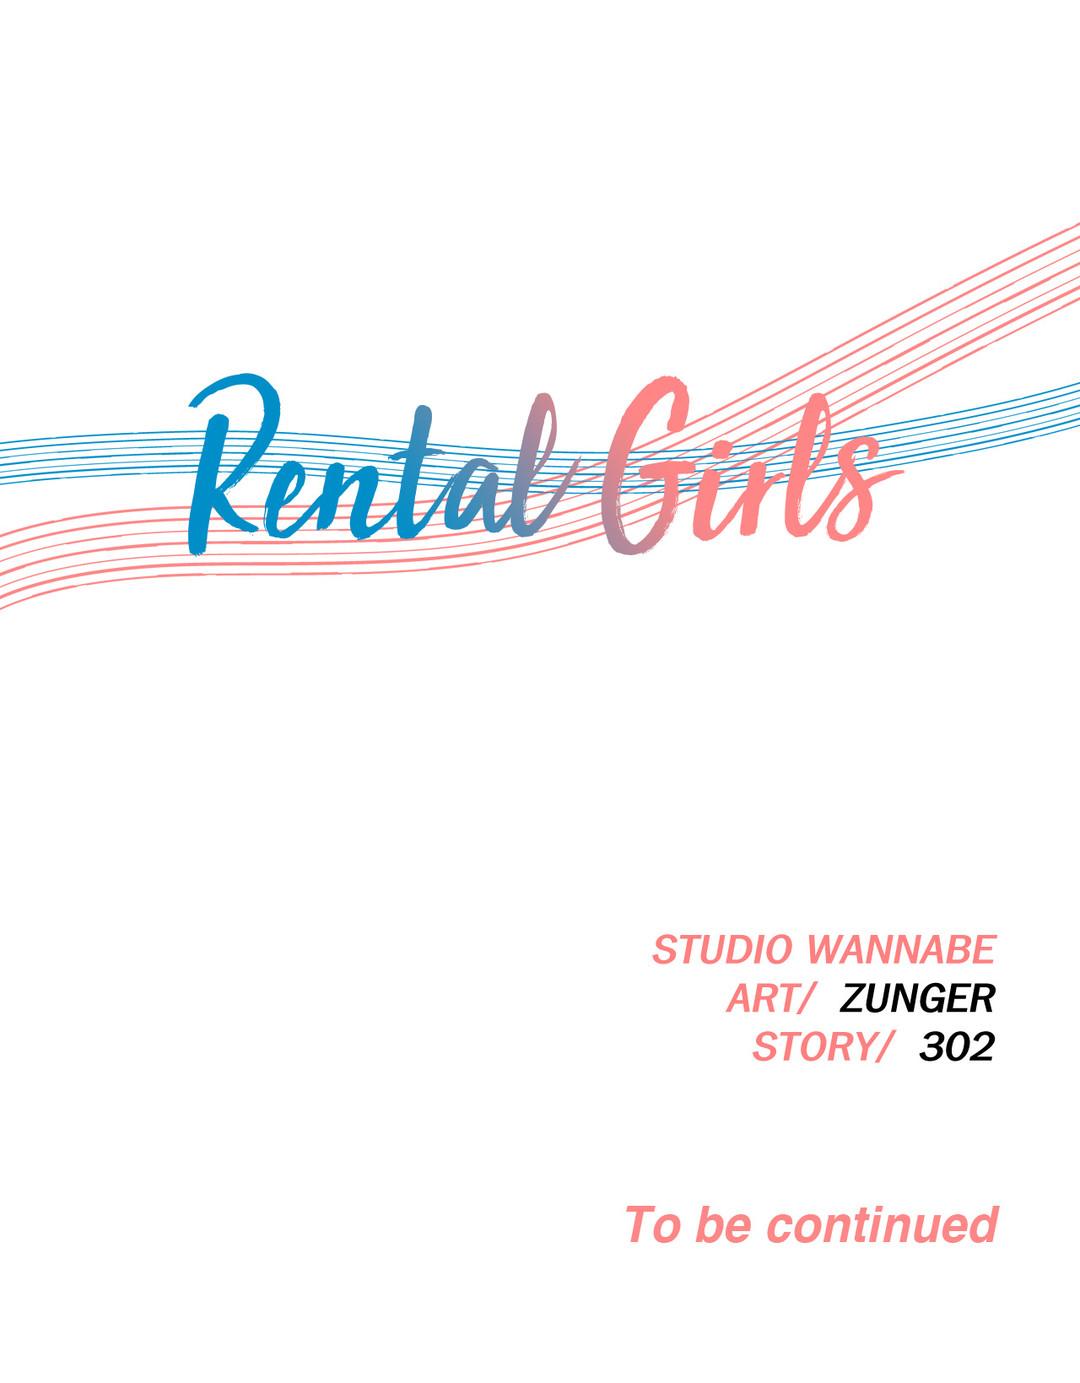 Rental Girls Ch 4 - 9 27